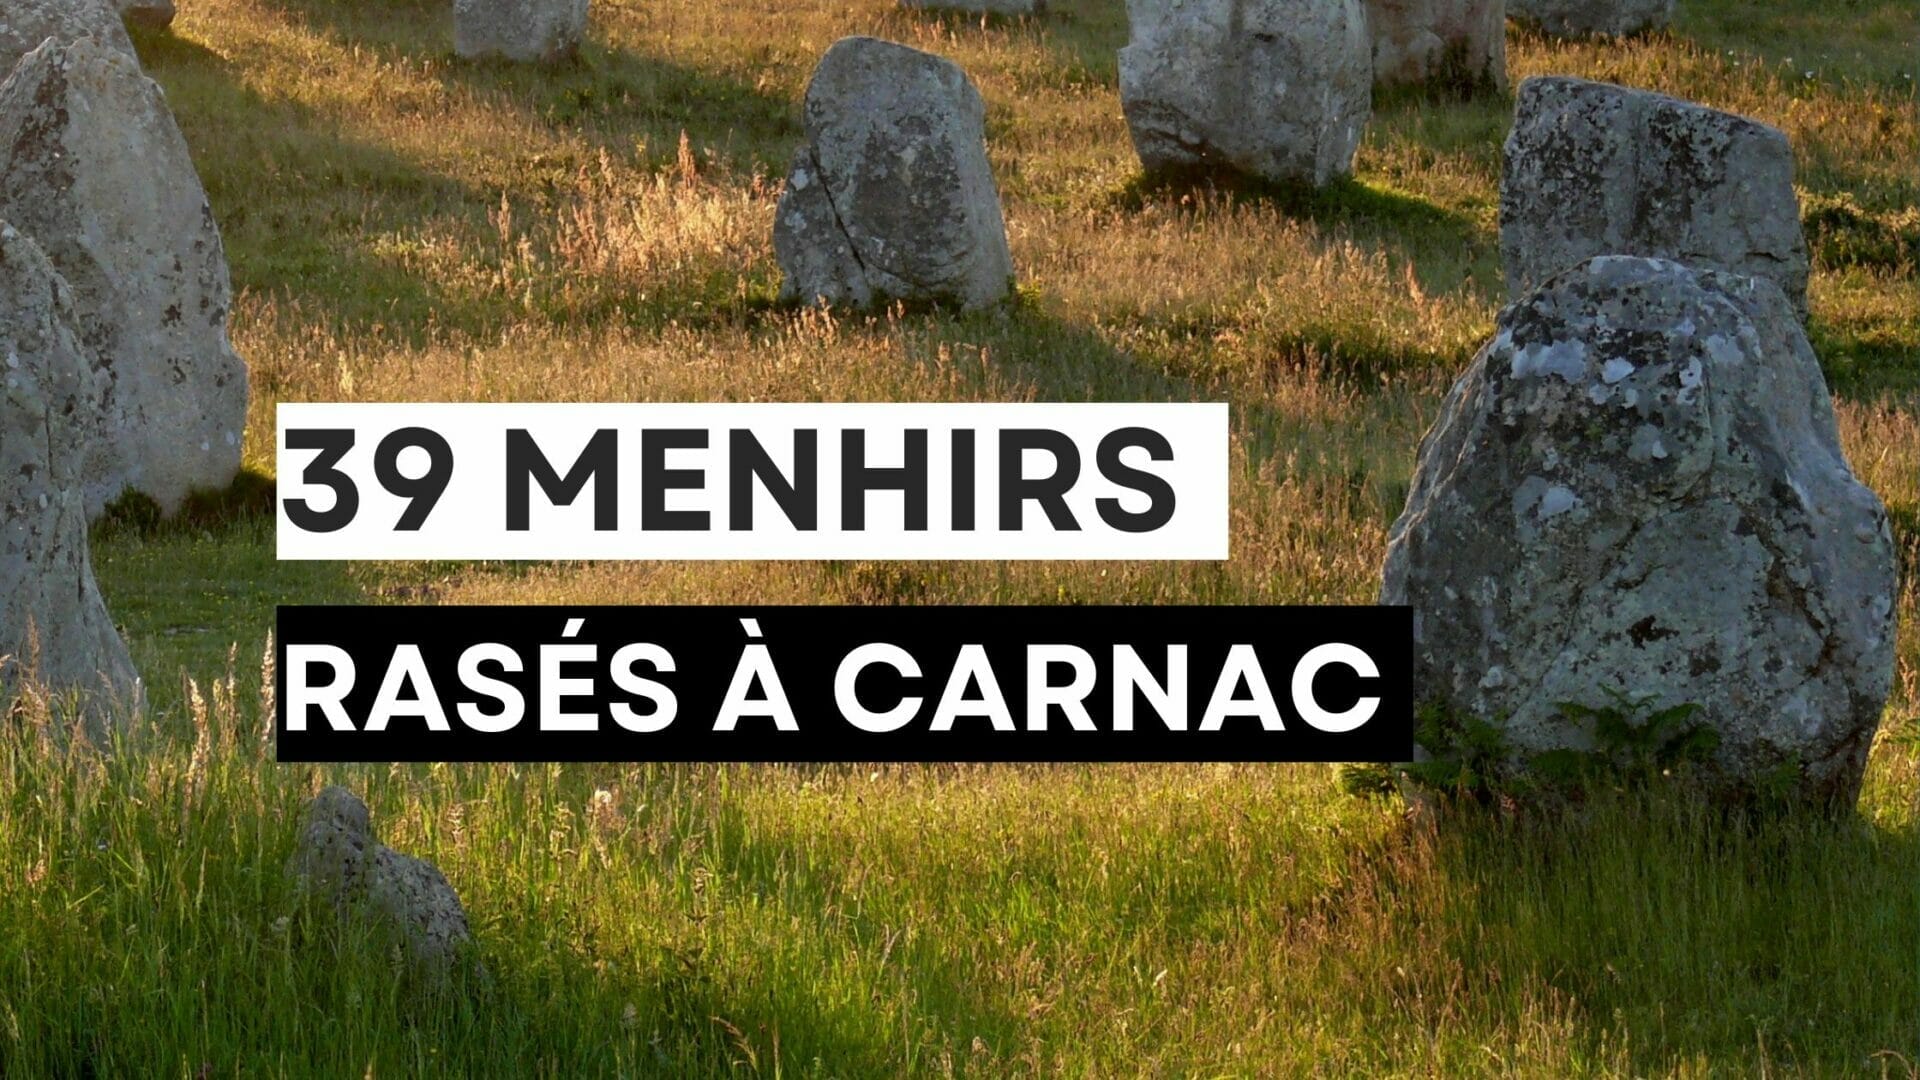 39 menhirs détruits à Carnac pour construire un magasin de bricolage